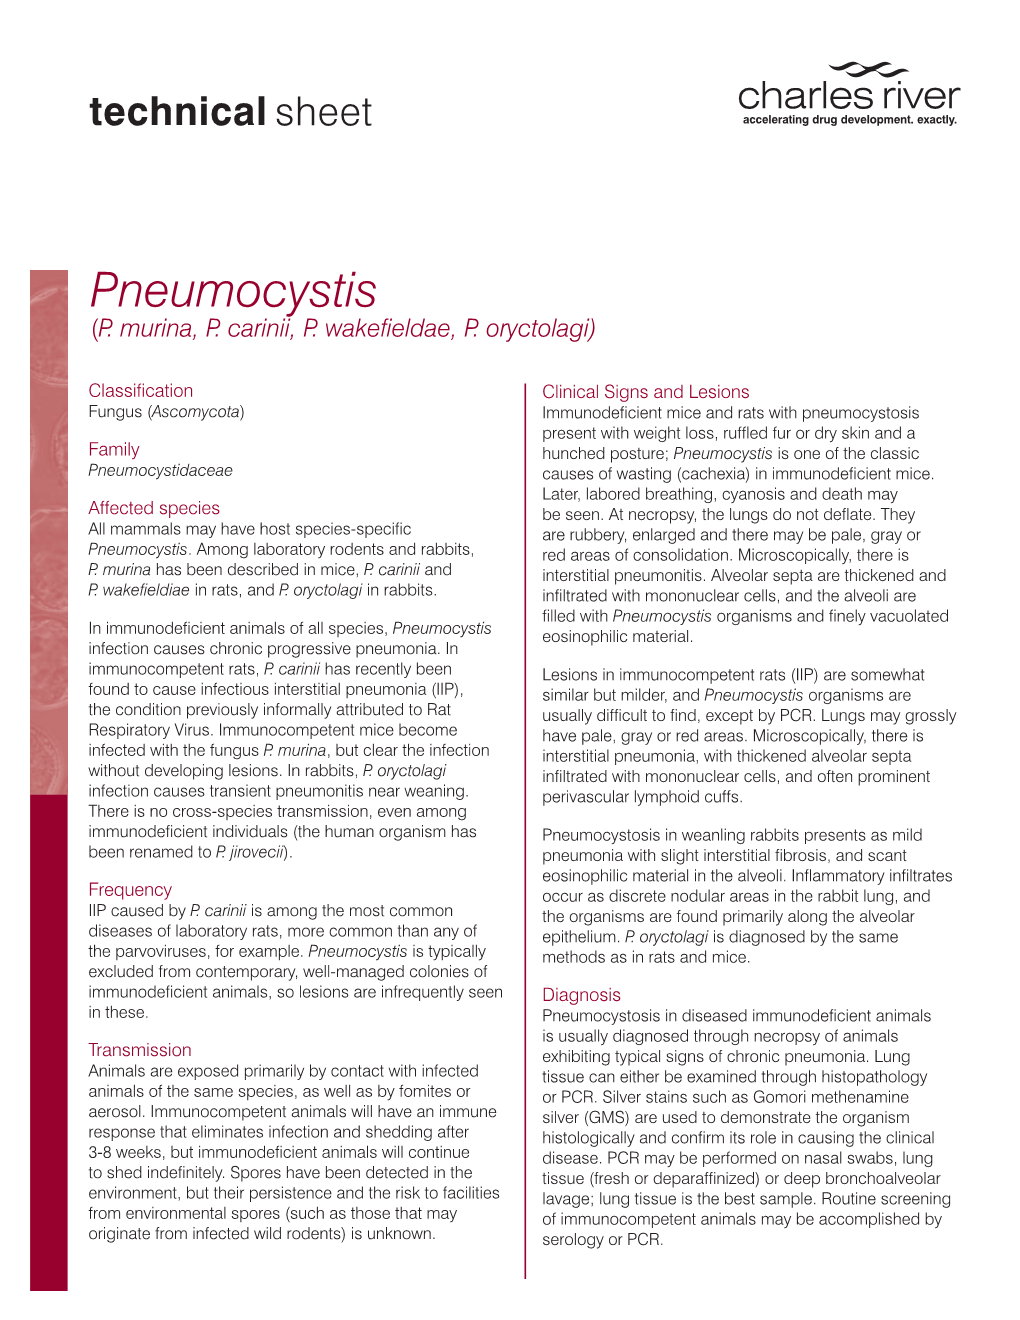 Pneumocystis (P